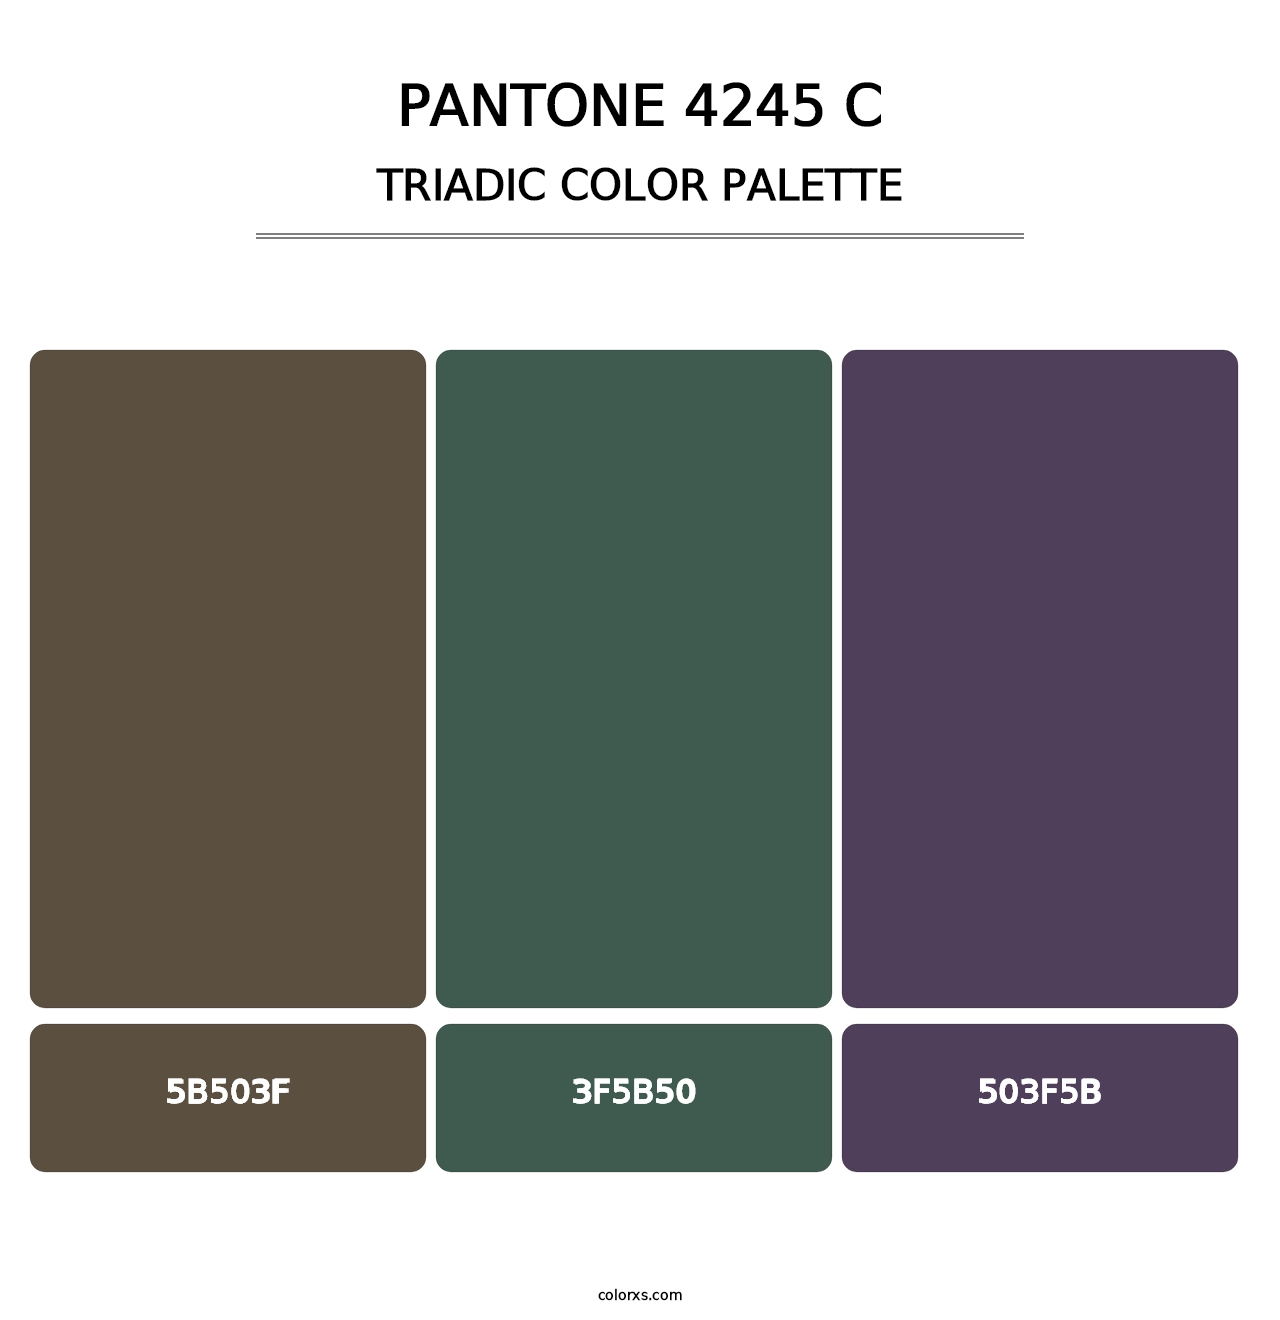 PANTONE 4245 C - Triadic Color Palette